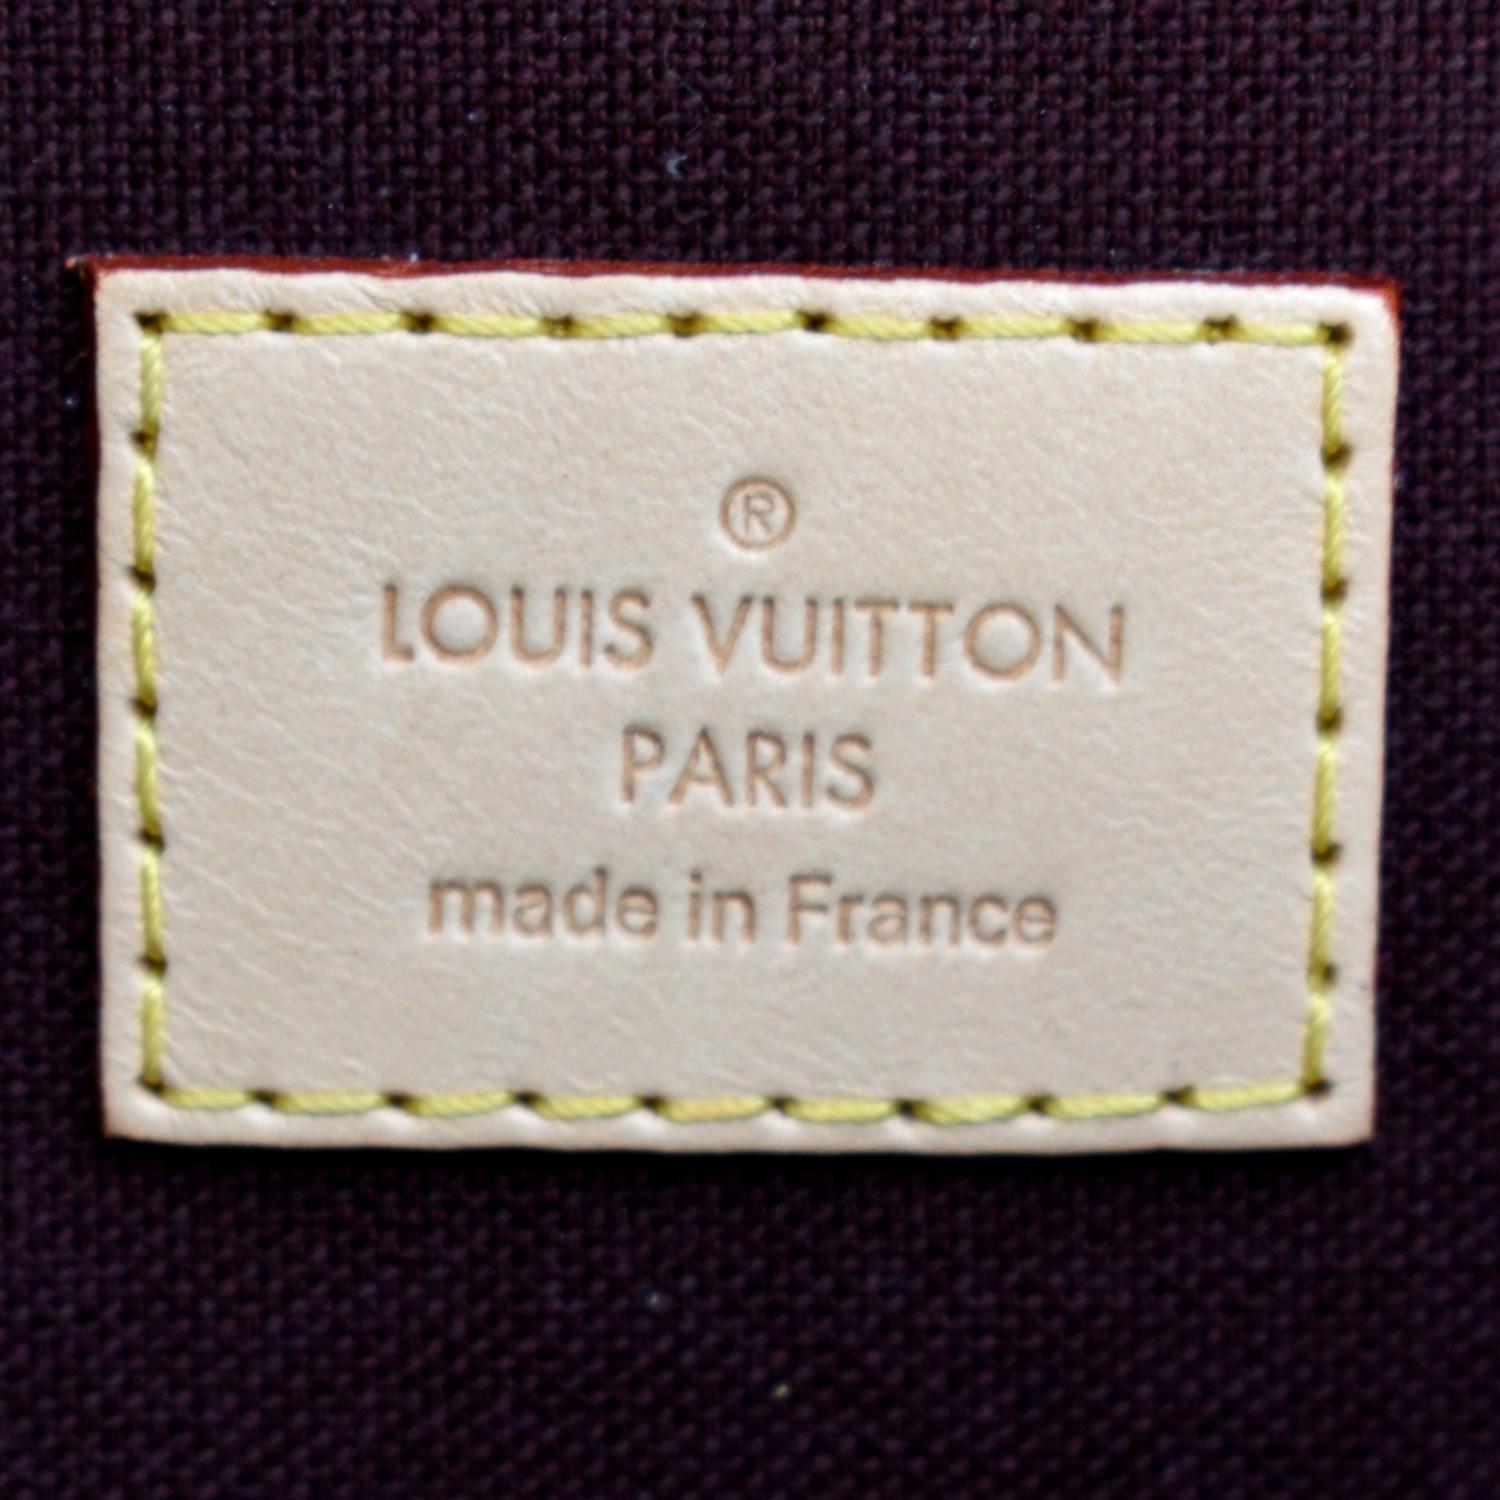 Brown Louis Vuitton Monogram Favorite MM Crossbody Bag – Designer Revival